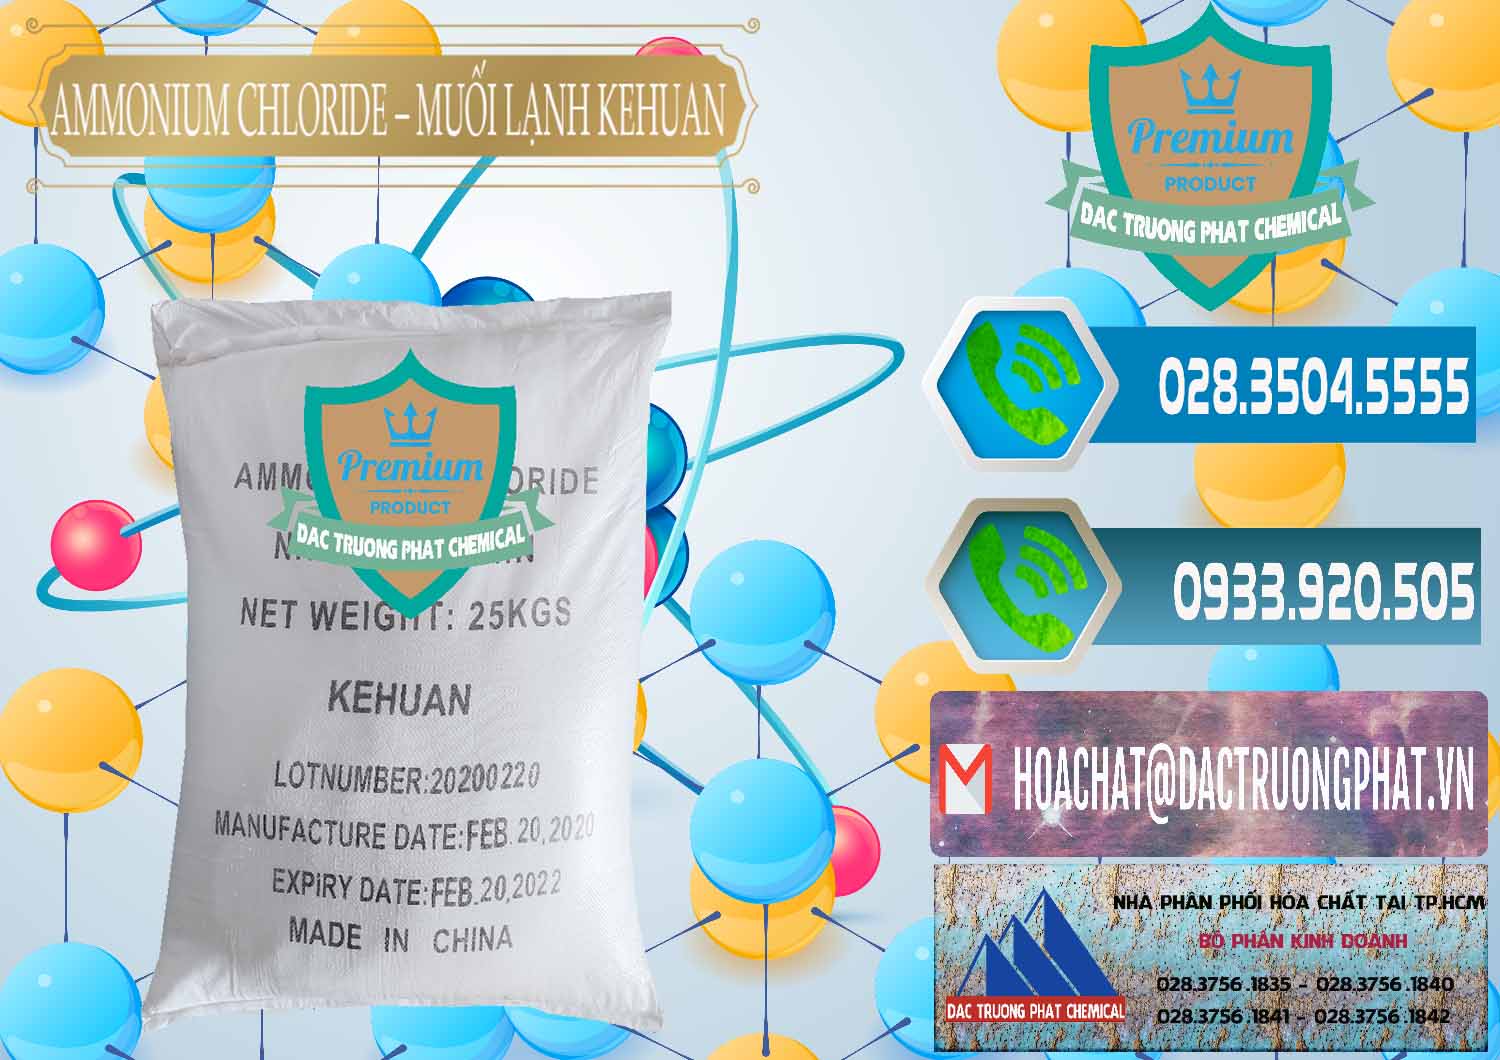 Đơn vị chuyên bán & cung cấp Ammonium Chloride – NH4CL Muối Lạnh Kehuan Trung Quốc China - 0022 - Đơn vị nhập khẩu & cung cấp hóa chất tại TP.HCM - congtyhoachat.net